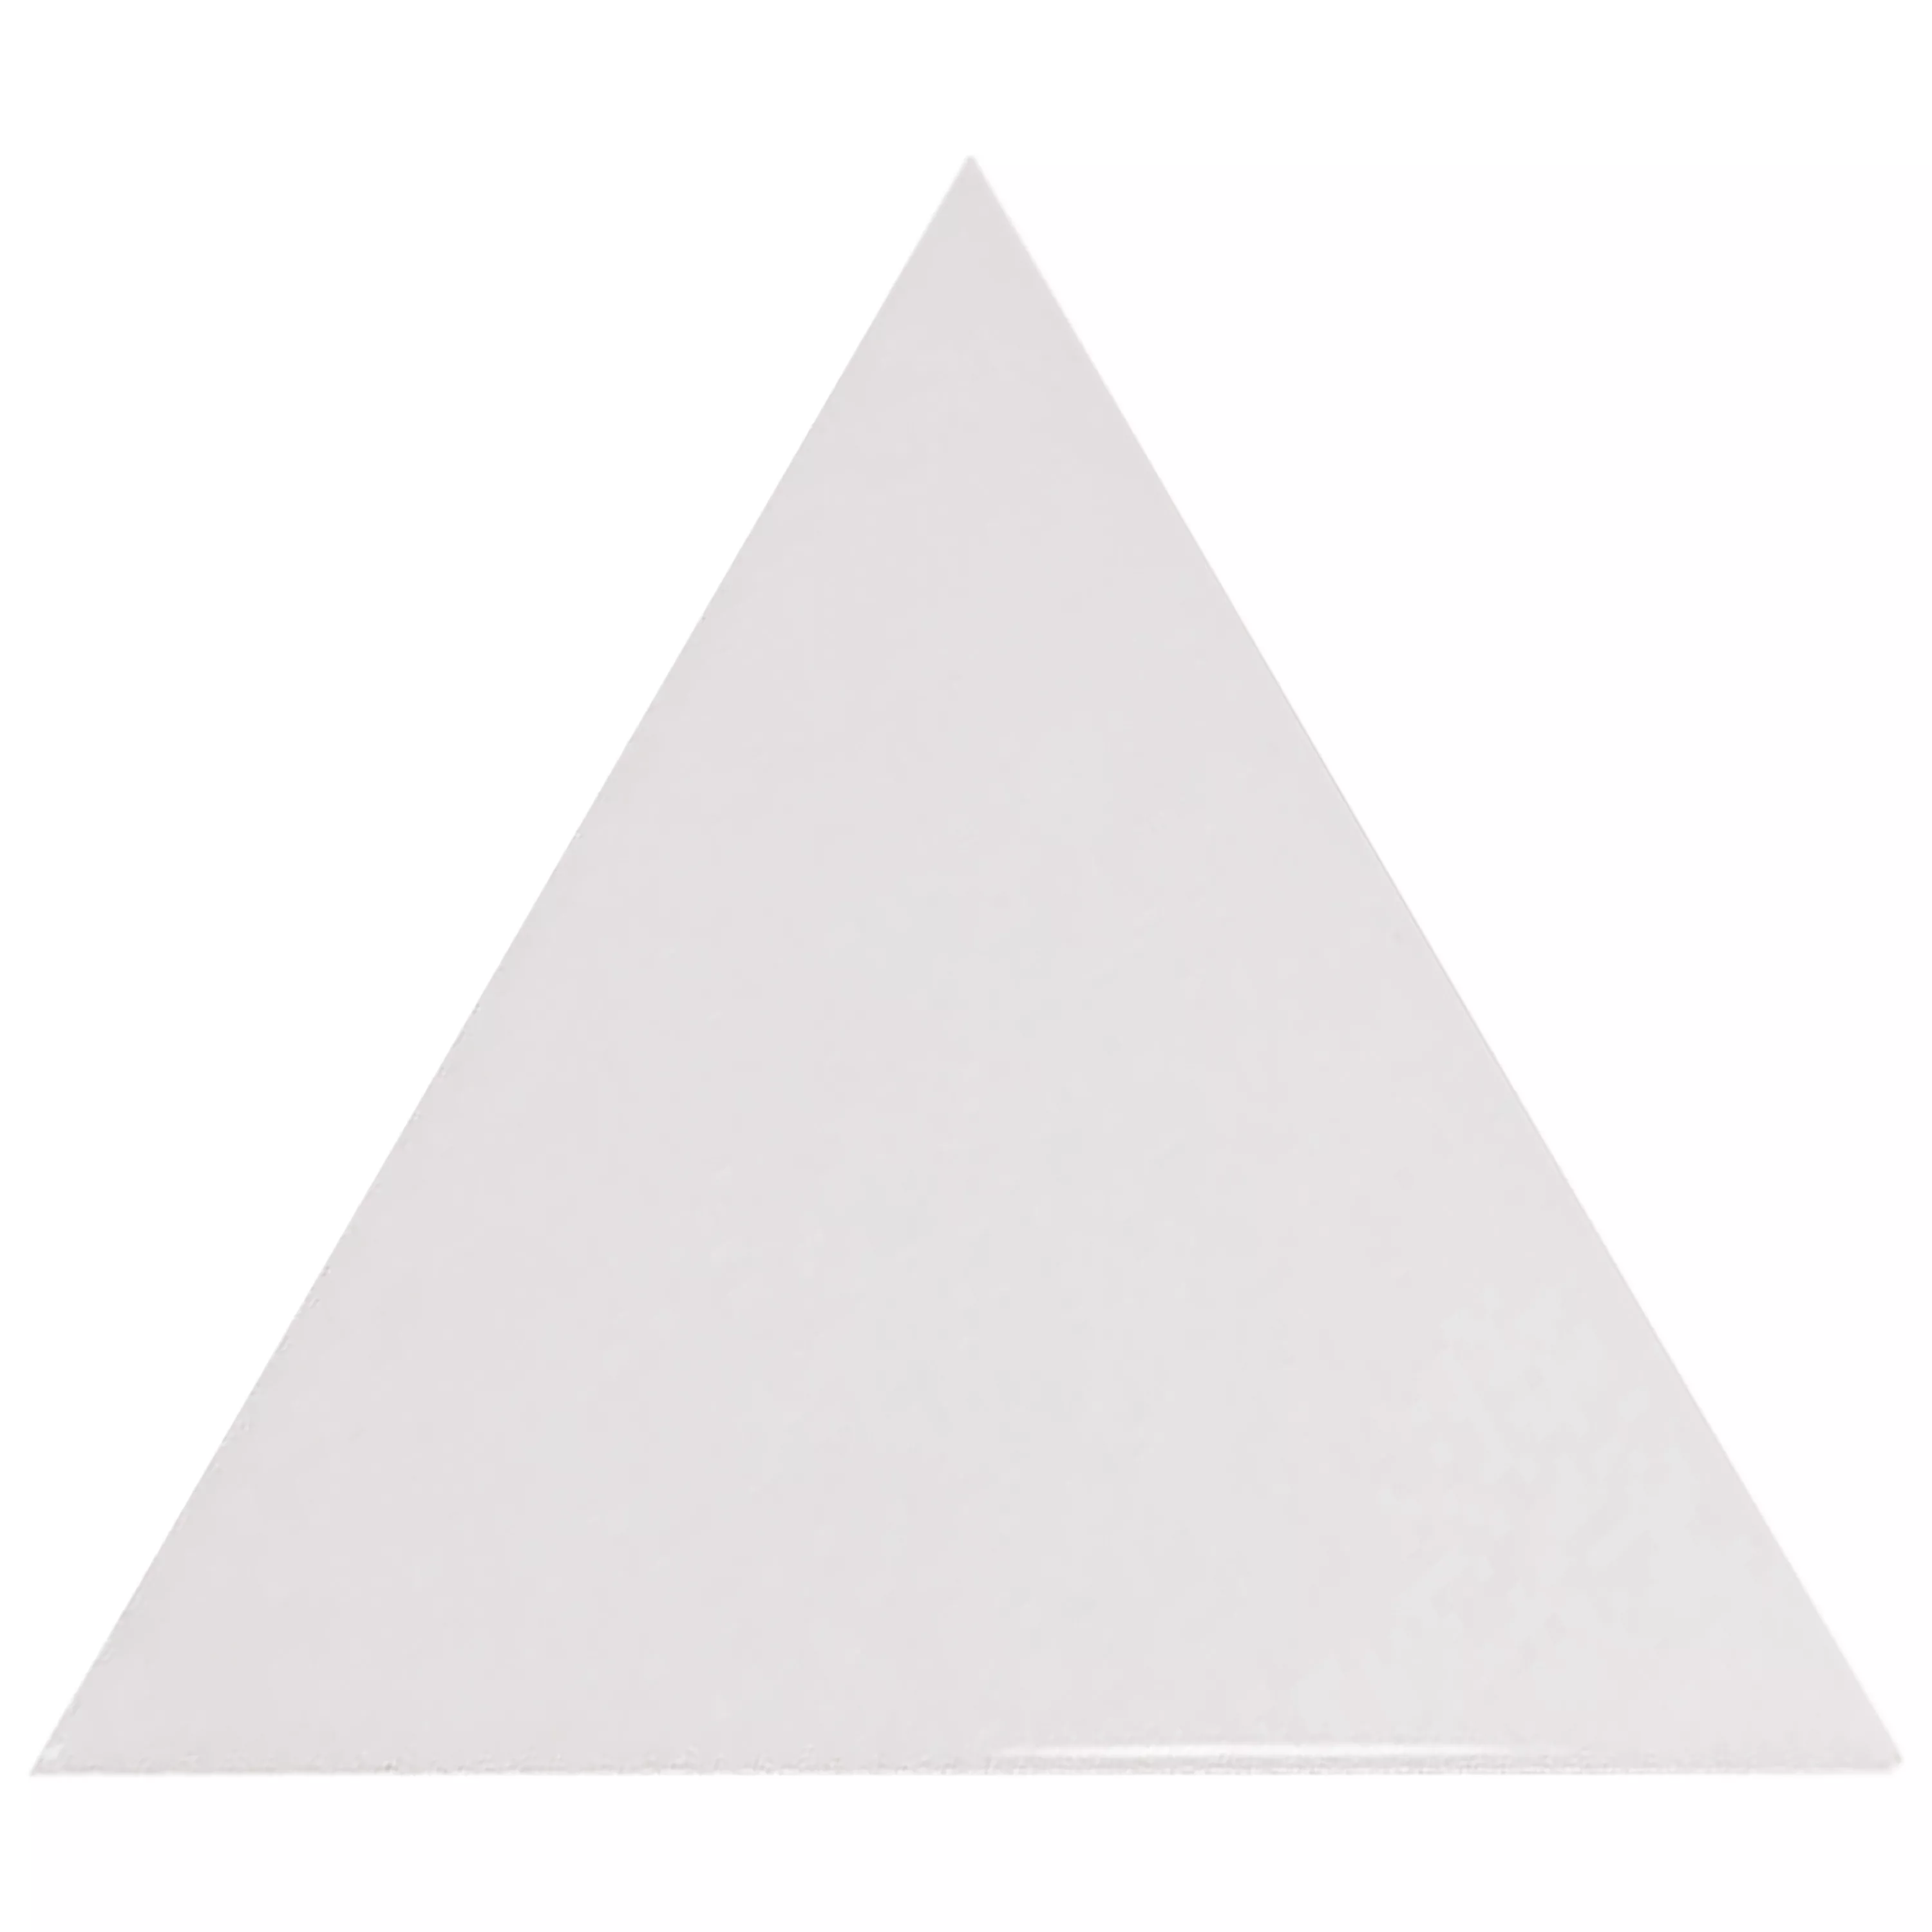 Sample Wall Tiles Britannia Triangle 10,8x12,4cm Blanc